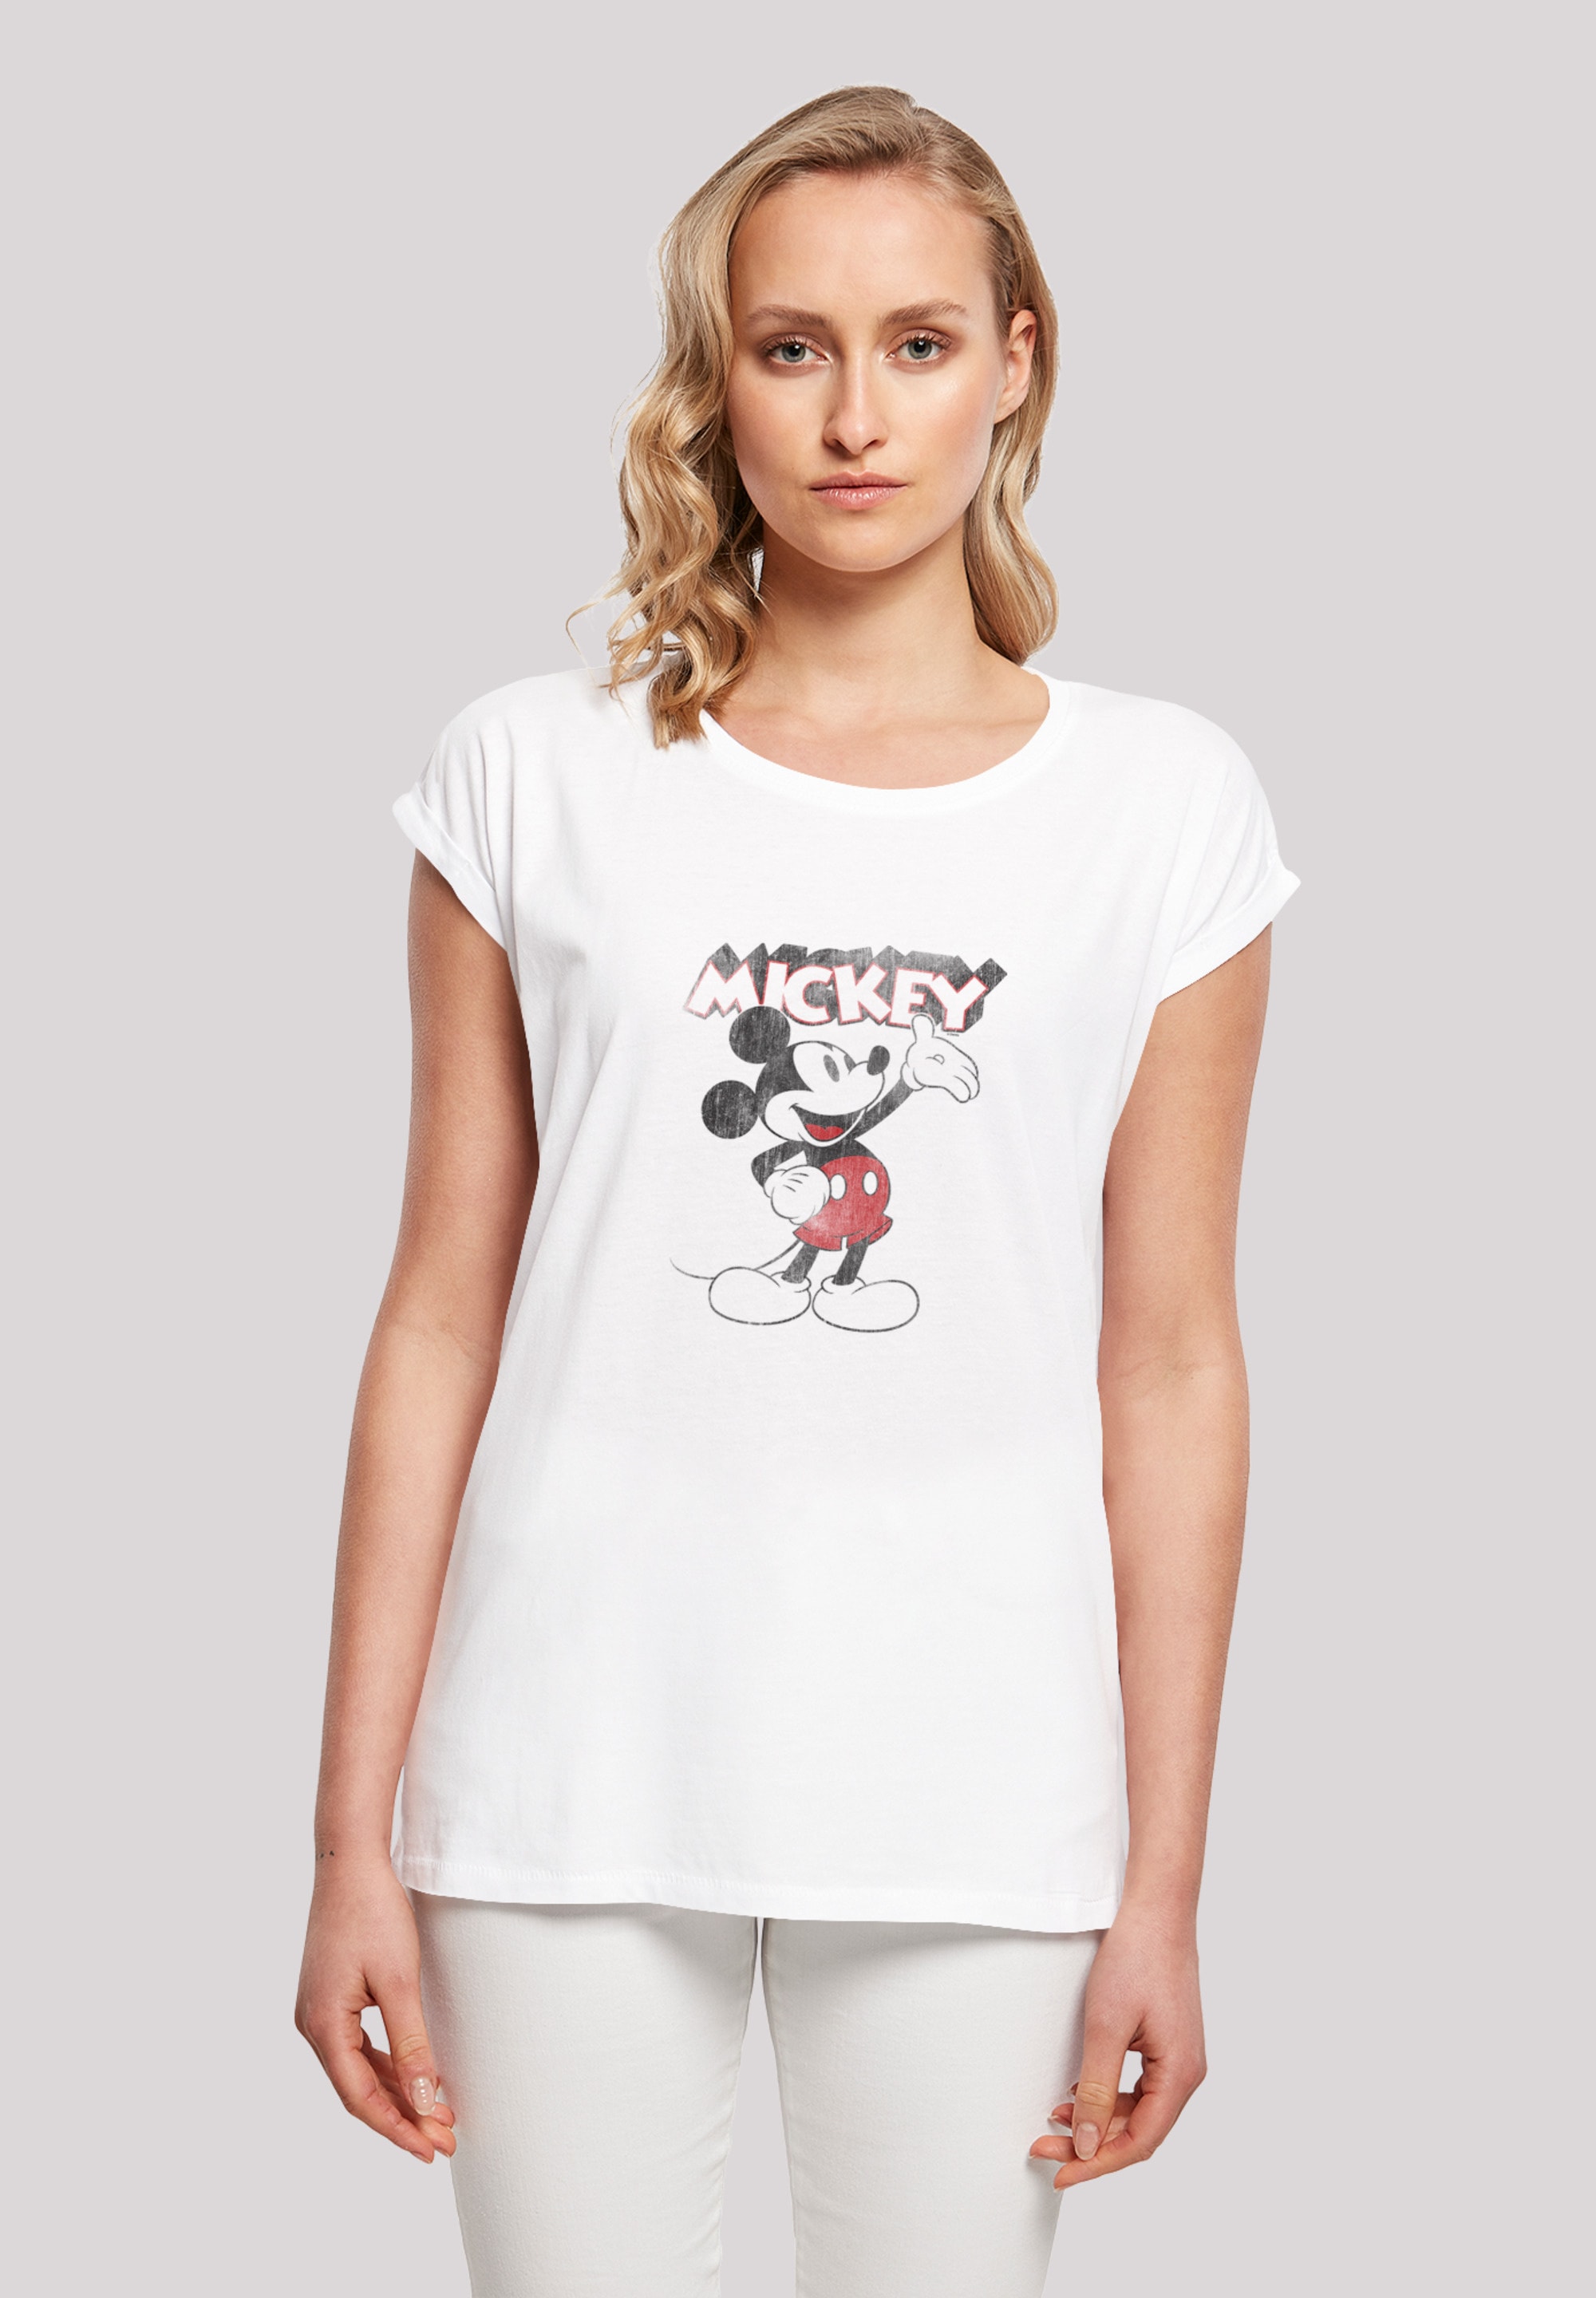 | F4NT4STIC Damen,Premium T-Shirt Mickey walking Mouse »Disney Presents Micky I\'m Maus«, Merch,Regular-Fit,Kurze Ärmel,Bedruckt Classic shoppen